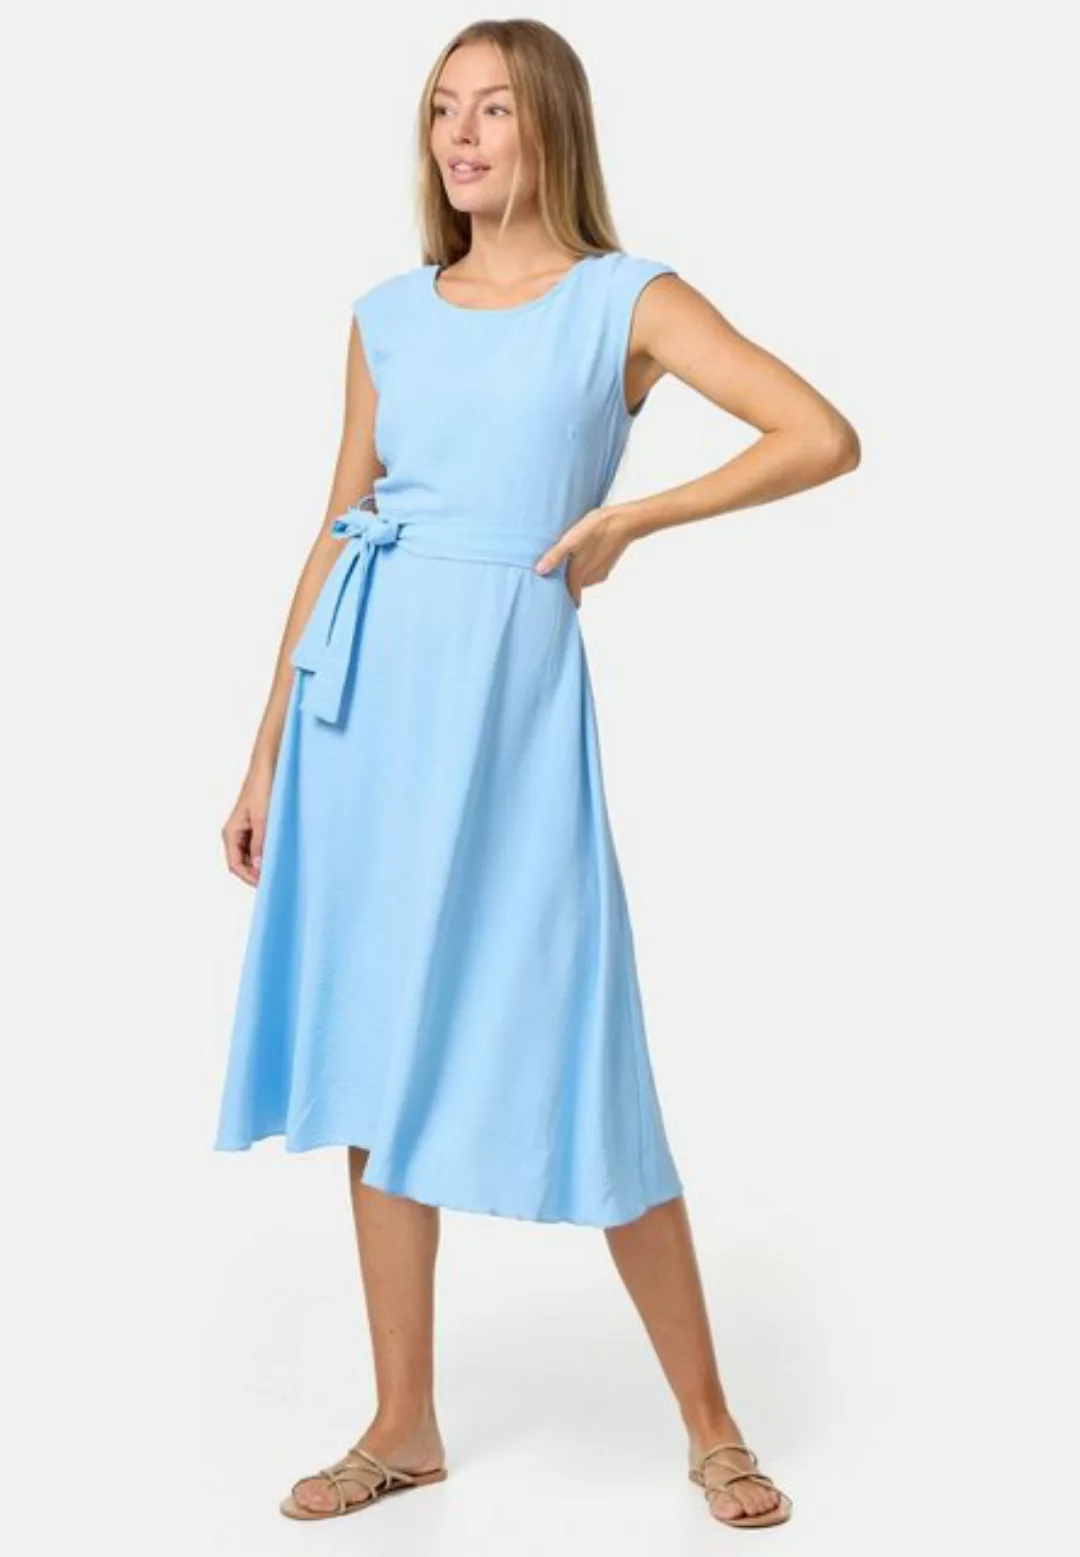 PM SELECTED Midikleid PM-26 (Ärmelloses Sommerkleid Dress mit Bindeband in günstig online kaufen